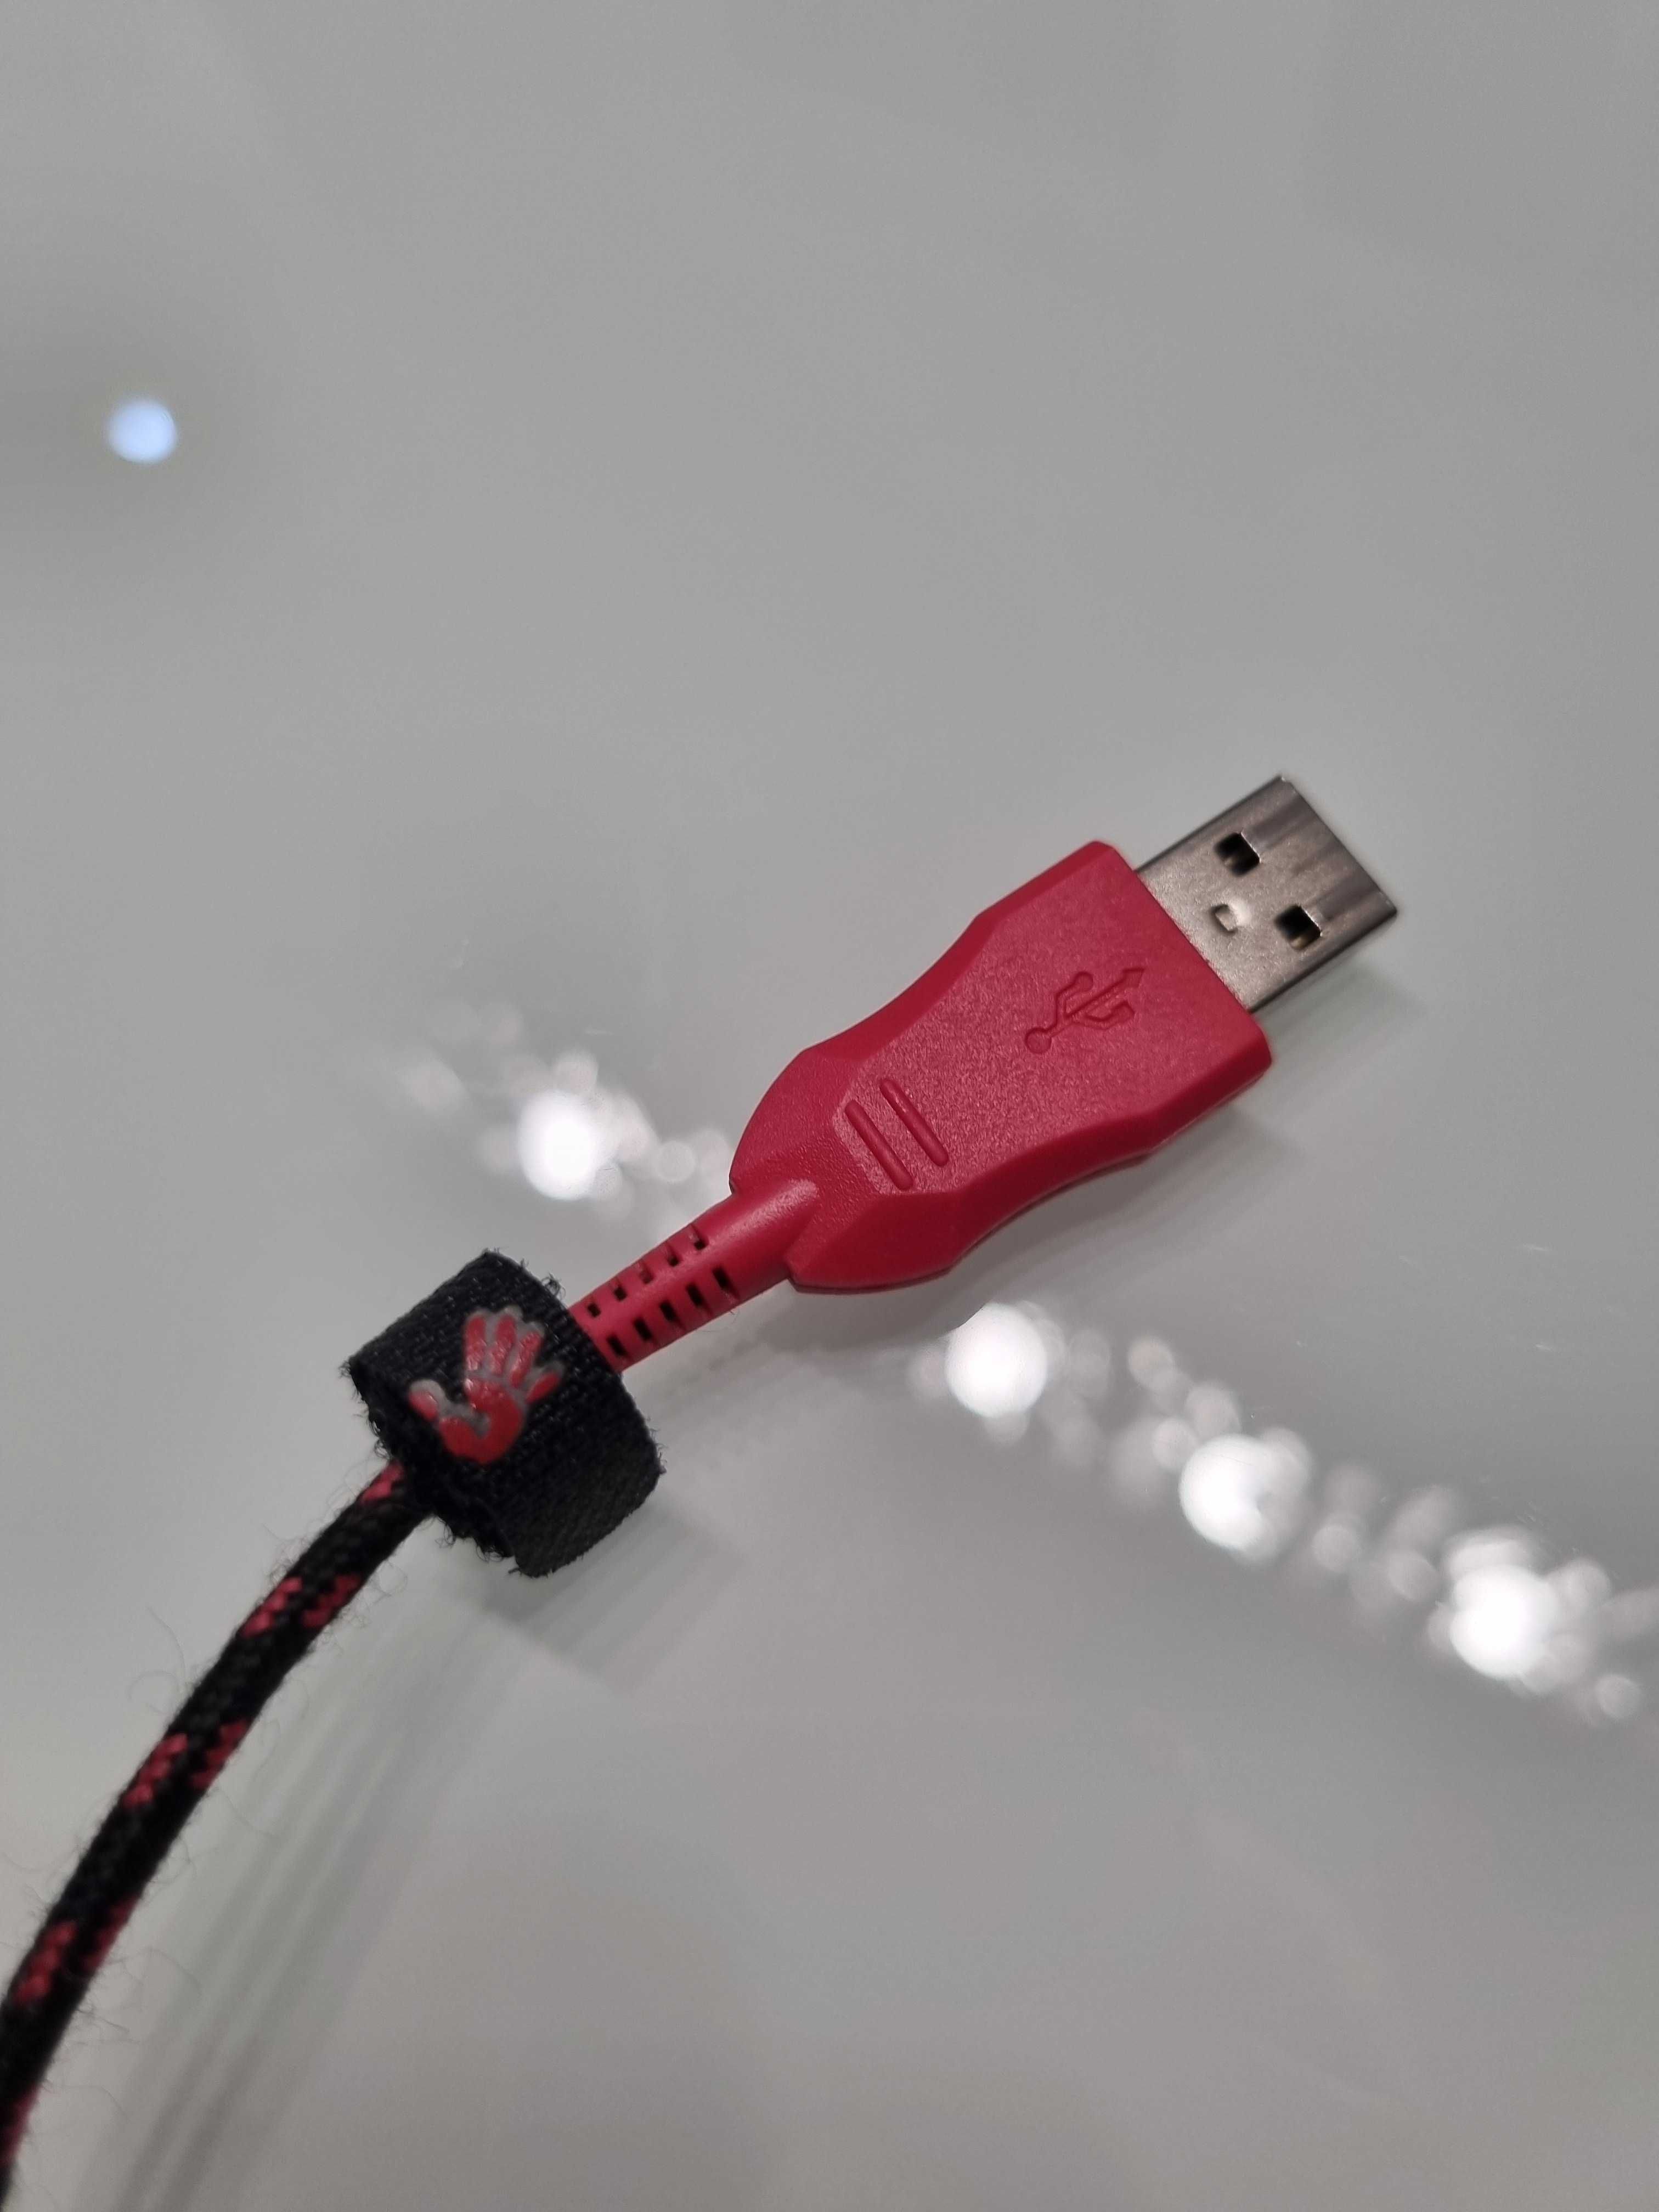 Myszka Mysz Przewodowa dla graczy A4Tech Bloody V8m USB Czarna